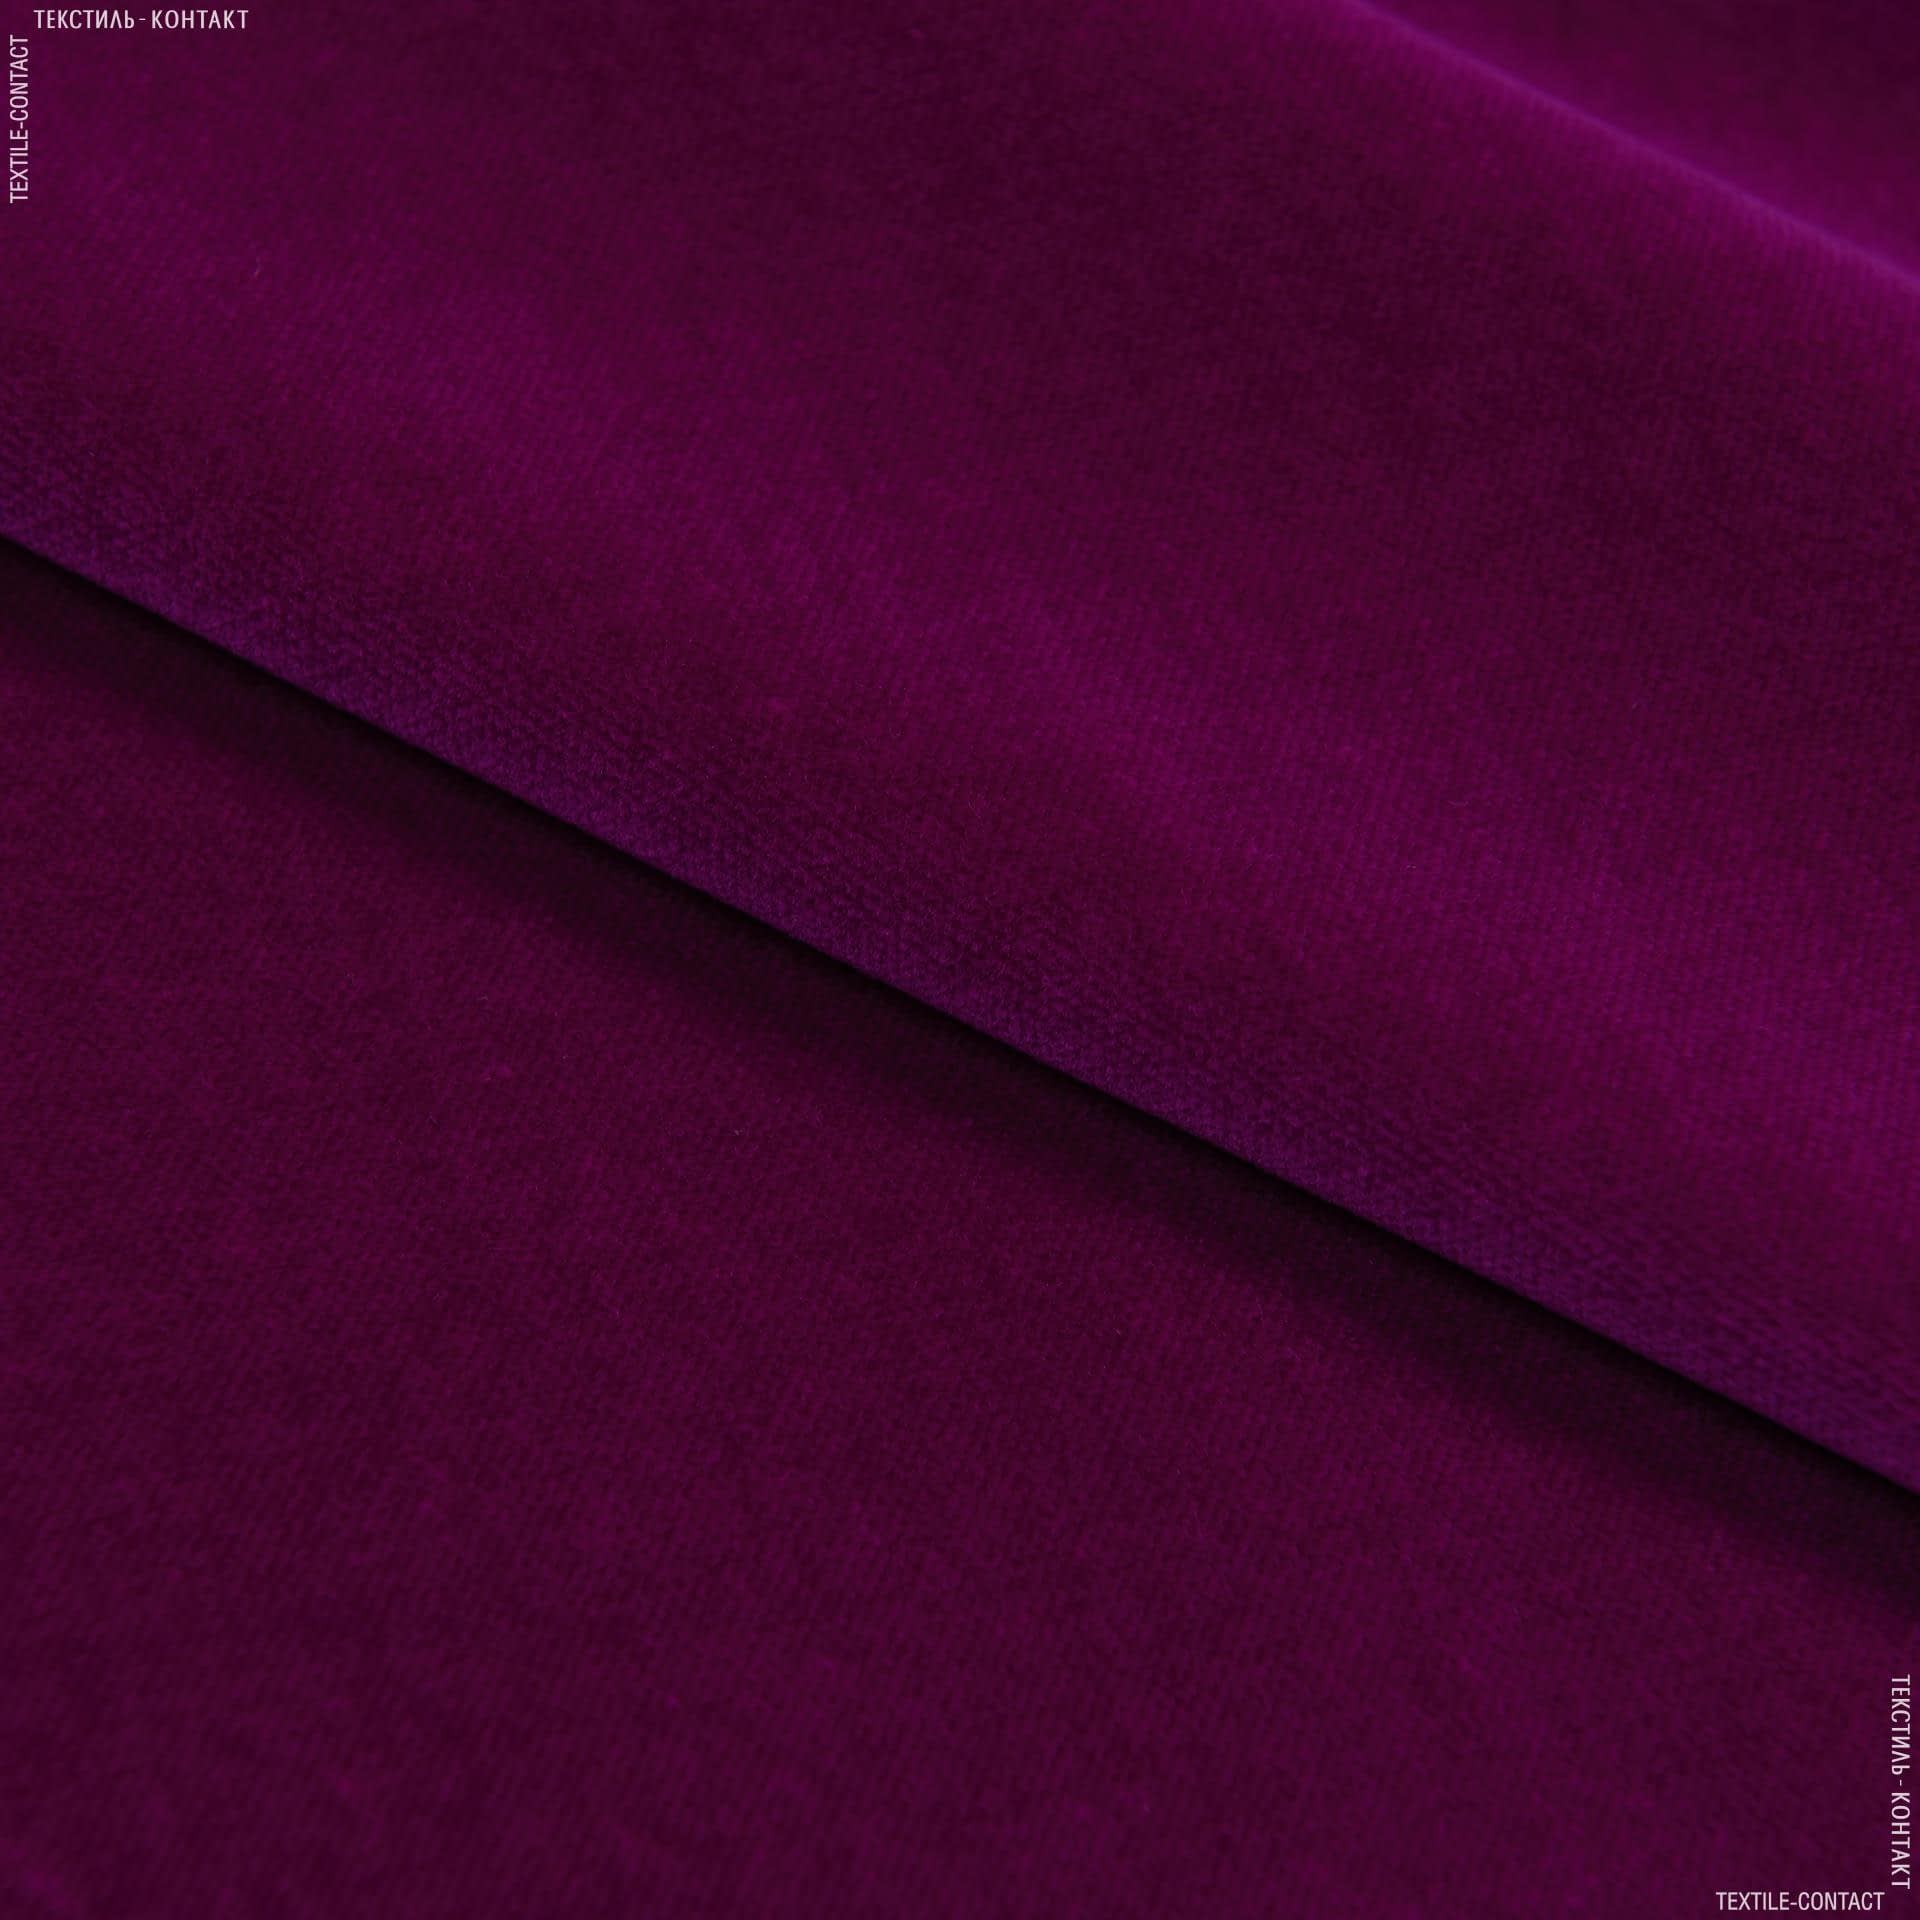 Тканини театральні тканини - Велюр Новара / NOVARA сток, фіолетовий, баклажановий